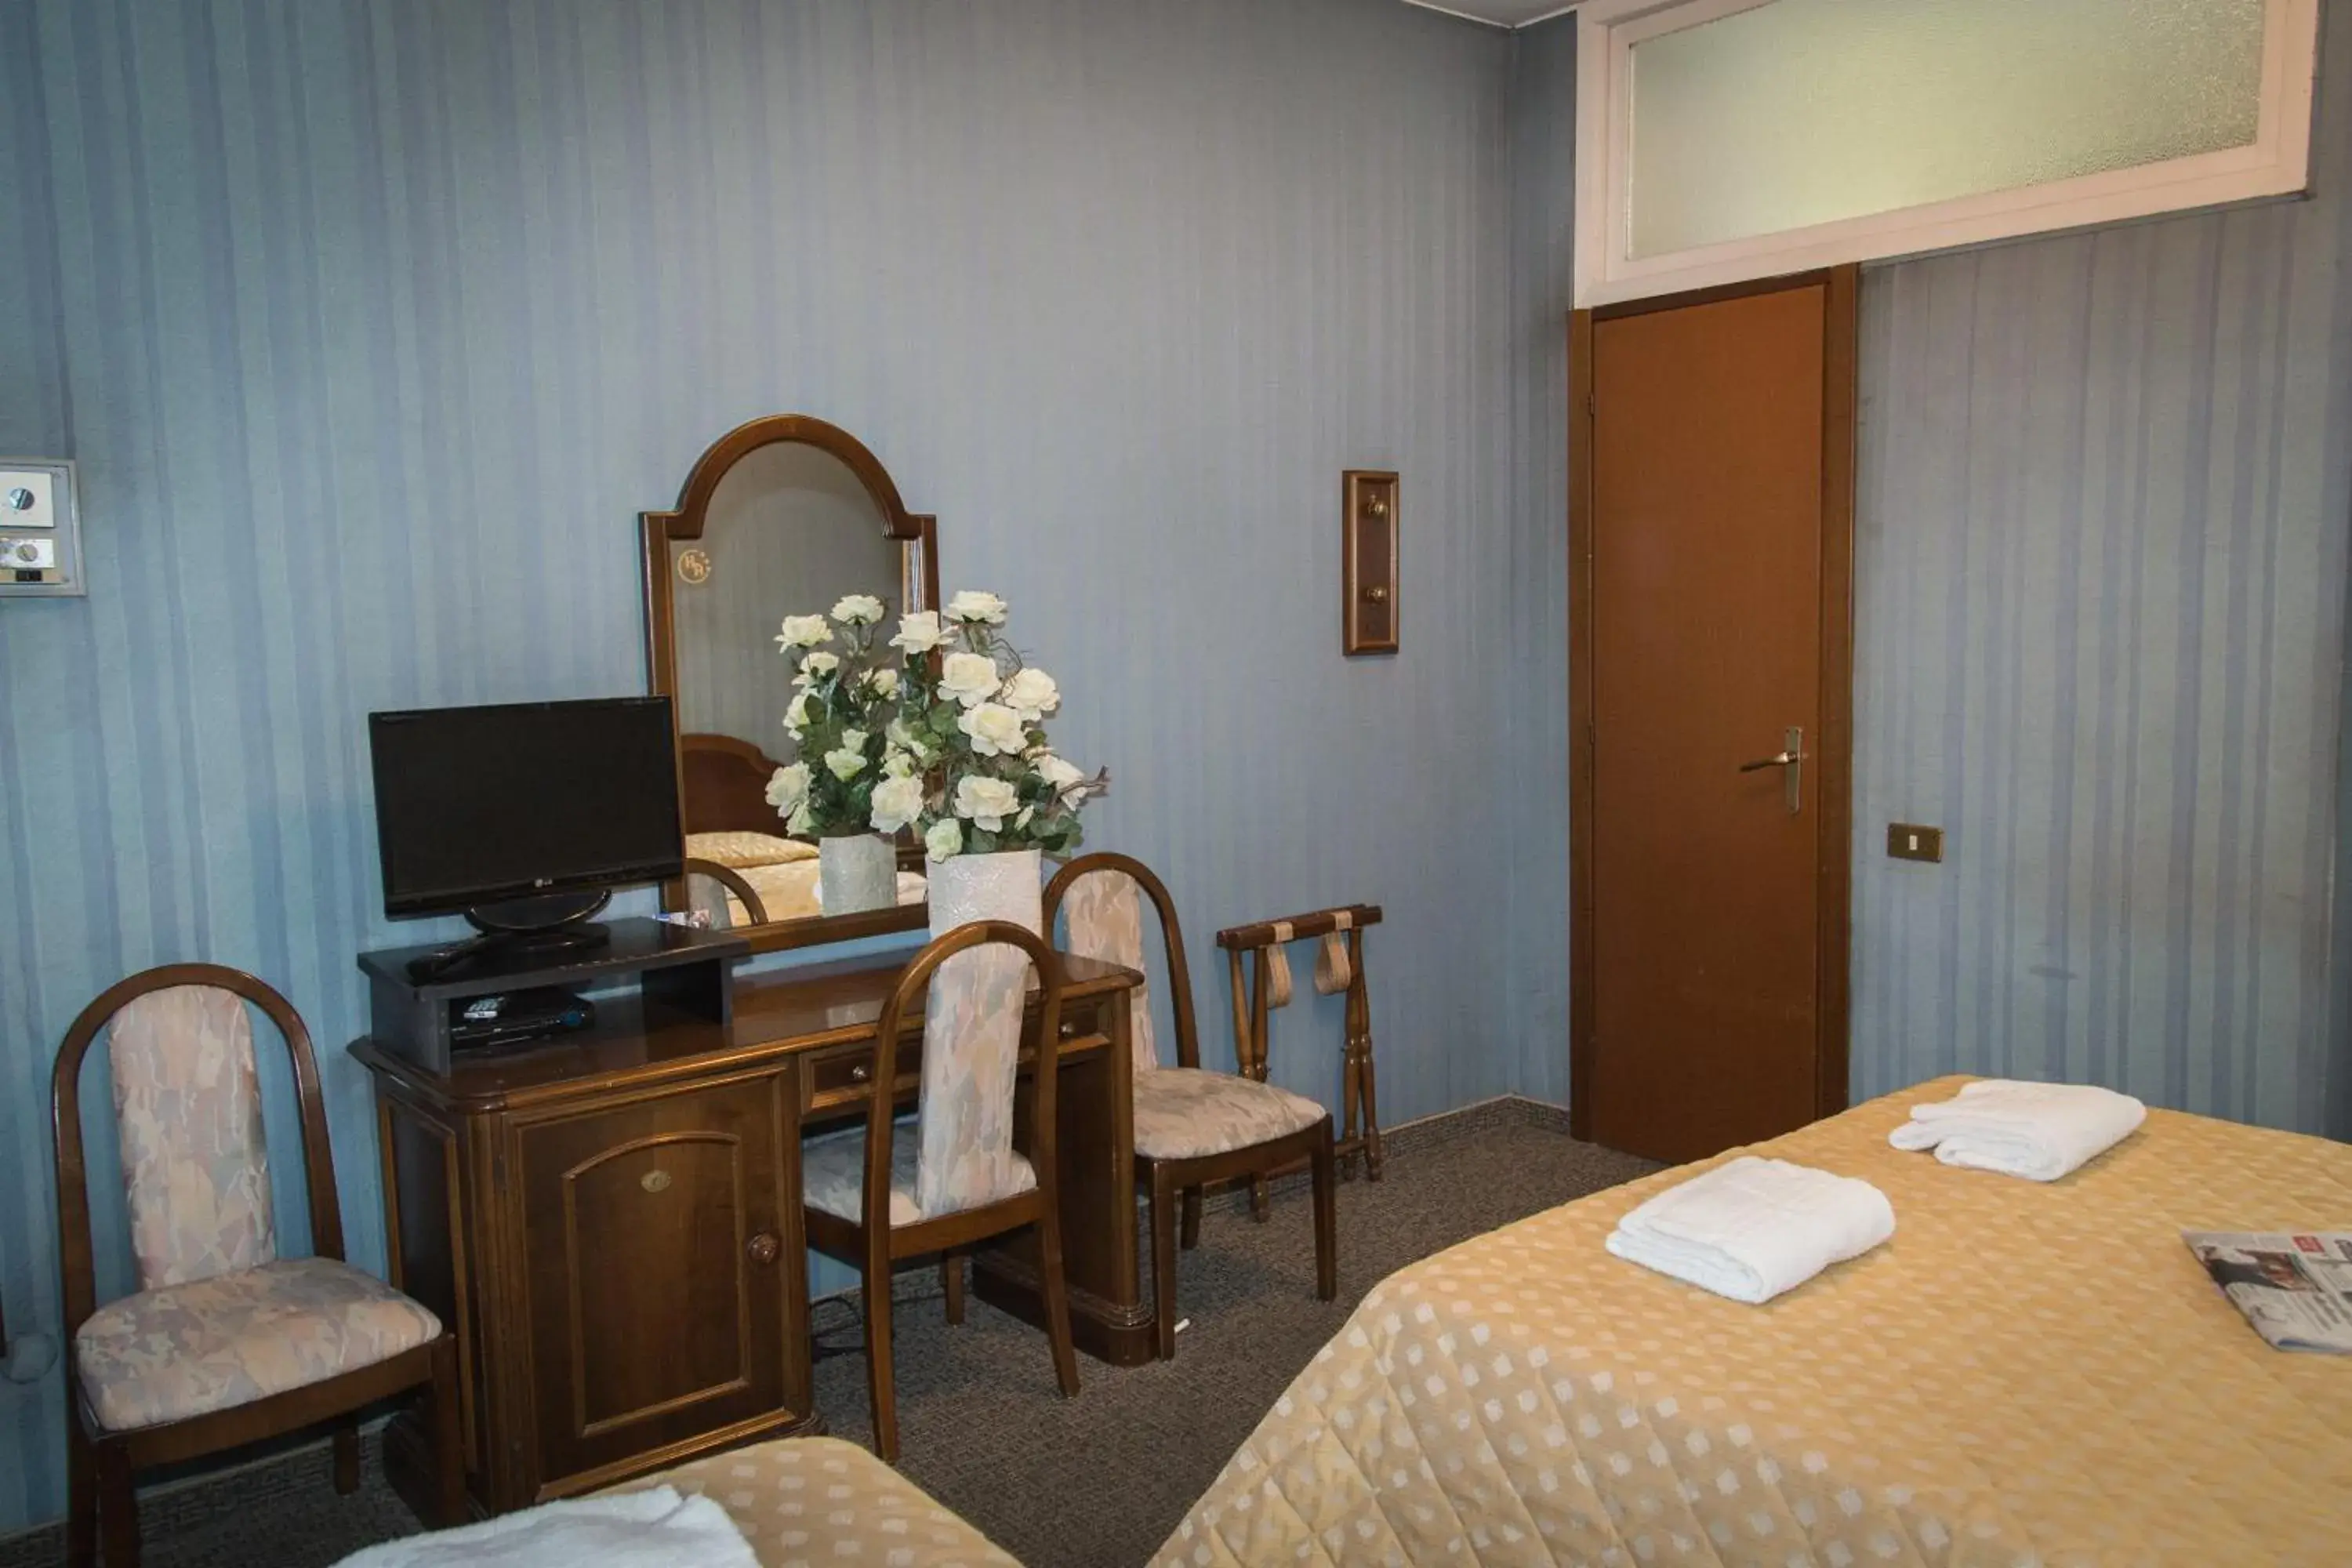 Triple Room in Hotel Accursio